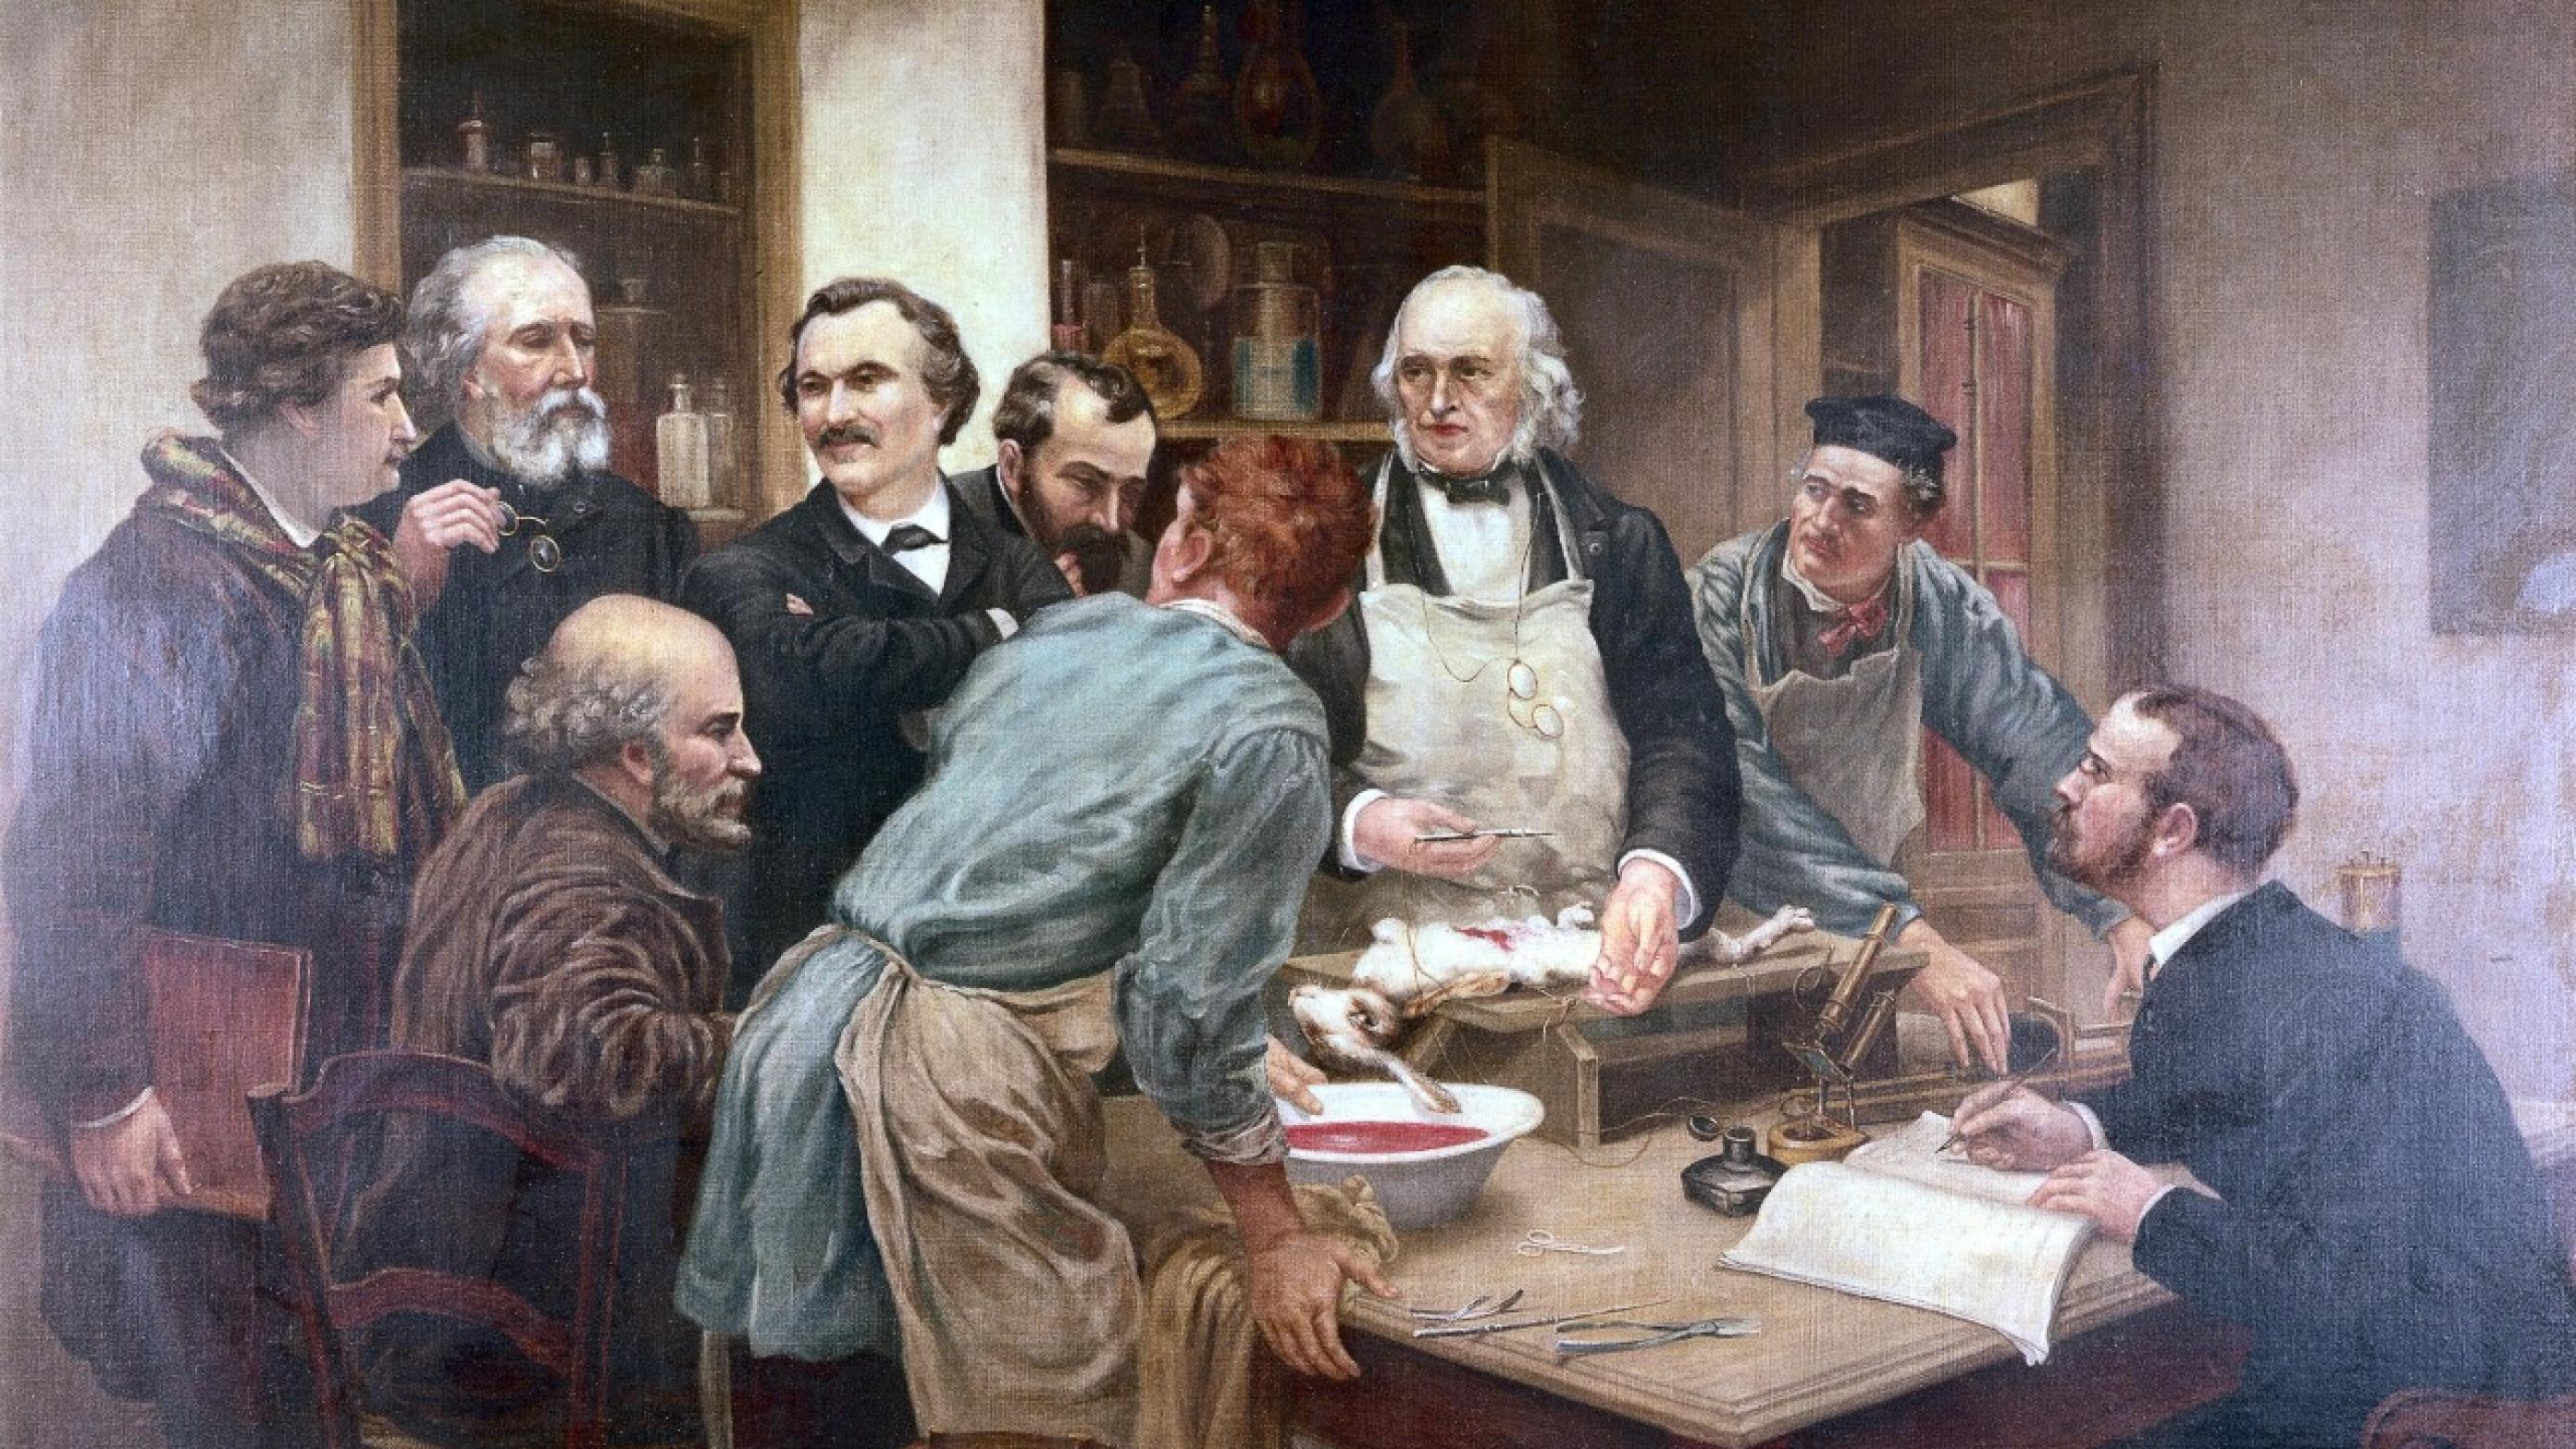 Den store franske fysiolog Claude Bernard eksperimenterer, mens hans elever ser beundrende til. Panum var assistent hos Bernard i begyndelsen af 1850’erne. Billedet er malet af Léon-Augustin Lhermitte (1844-1925) (Wellcome Collection)